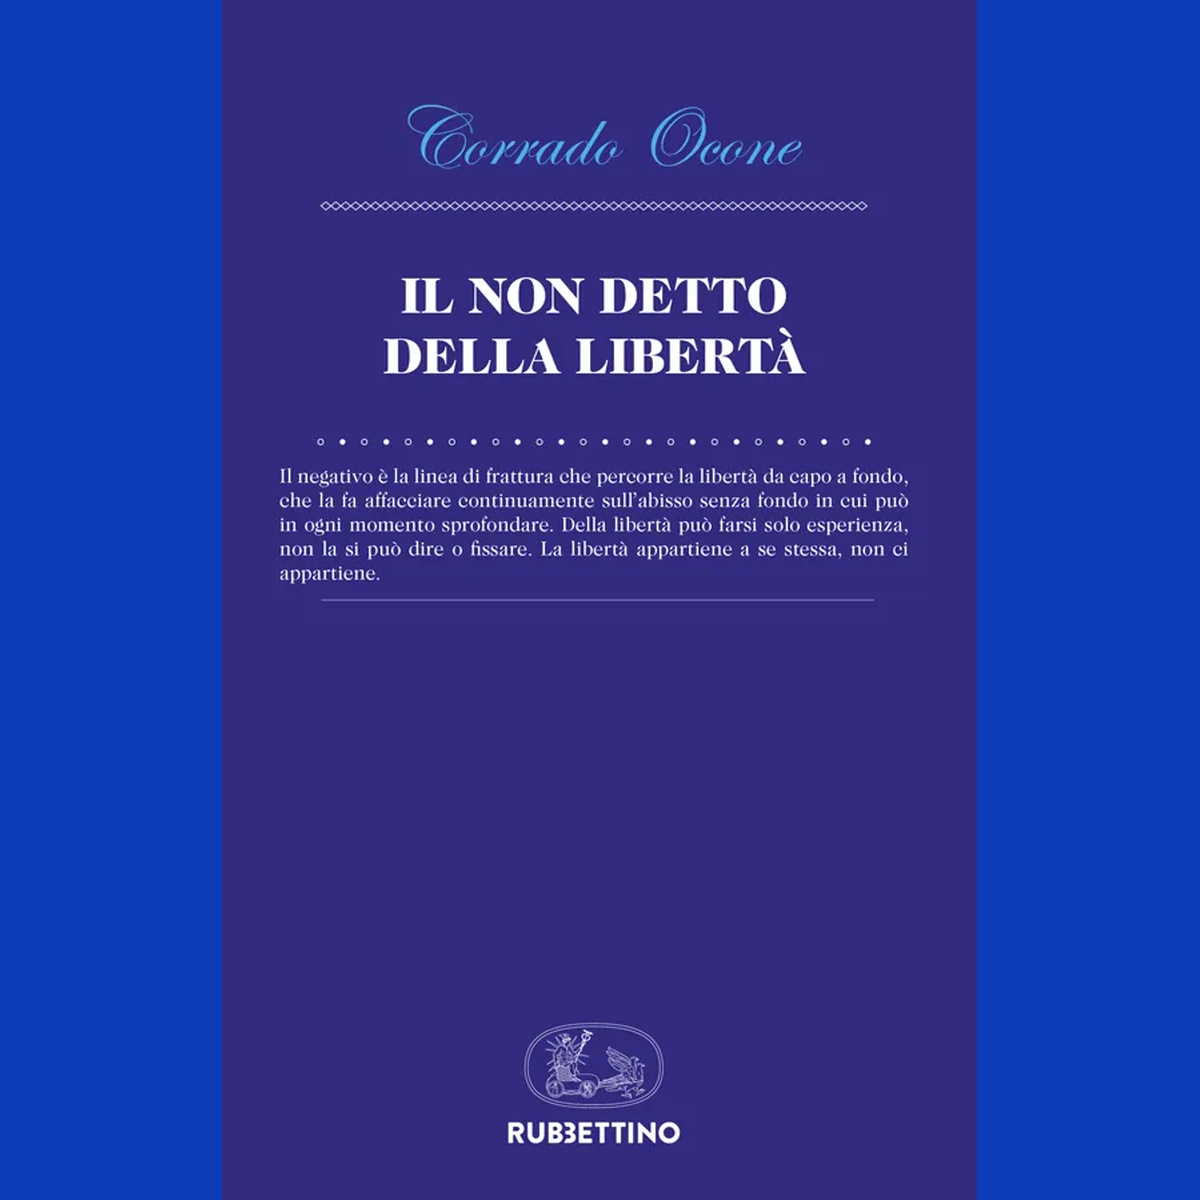 Il libro sulla Libertà di Corrado Ocone presentato a Roma